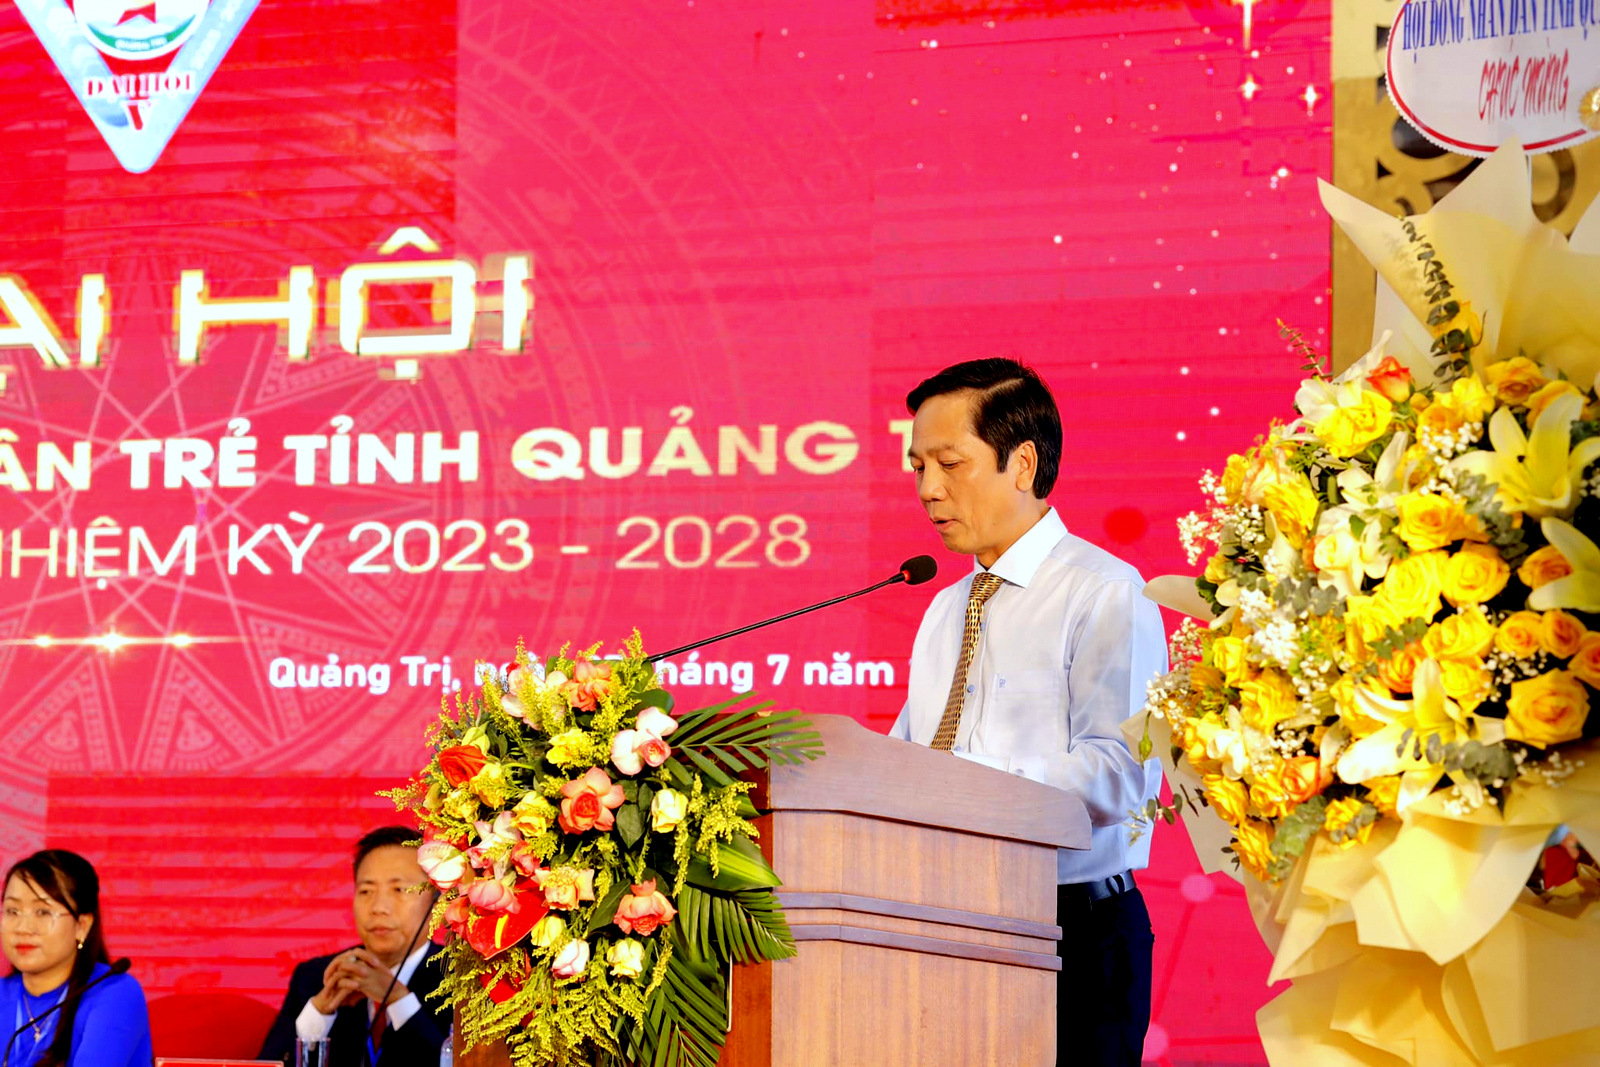 Ông Hoàng Nam - Phó Chủ tịch UBND tỉnh Quảng Trị phát biểu tại Đại hội.